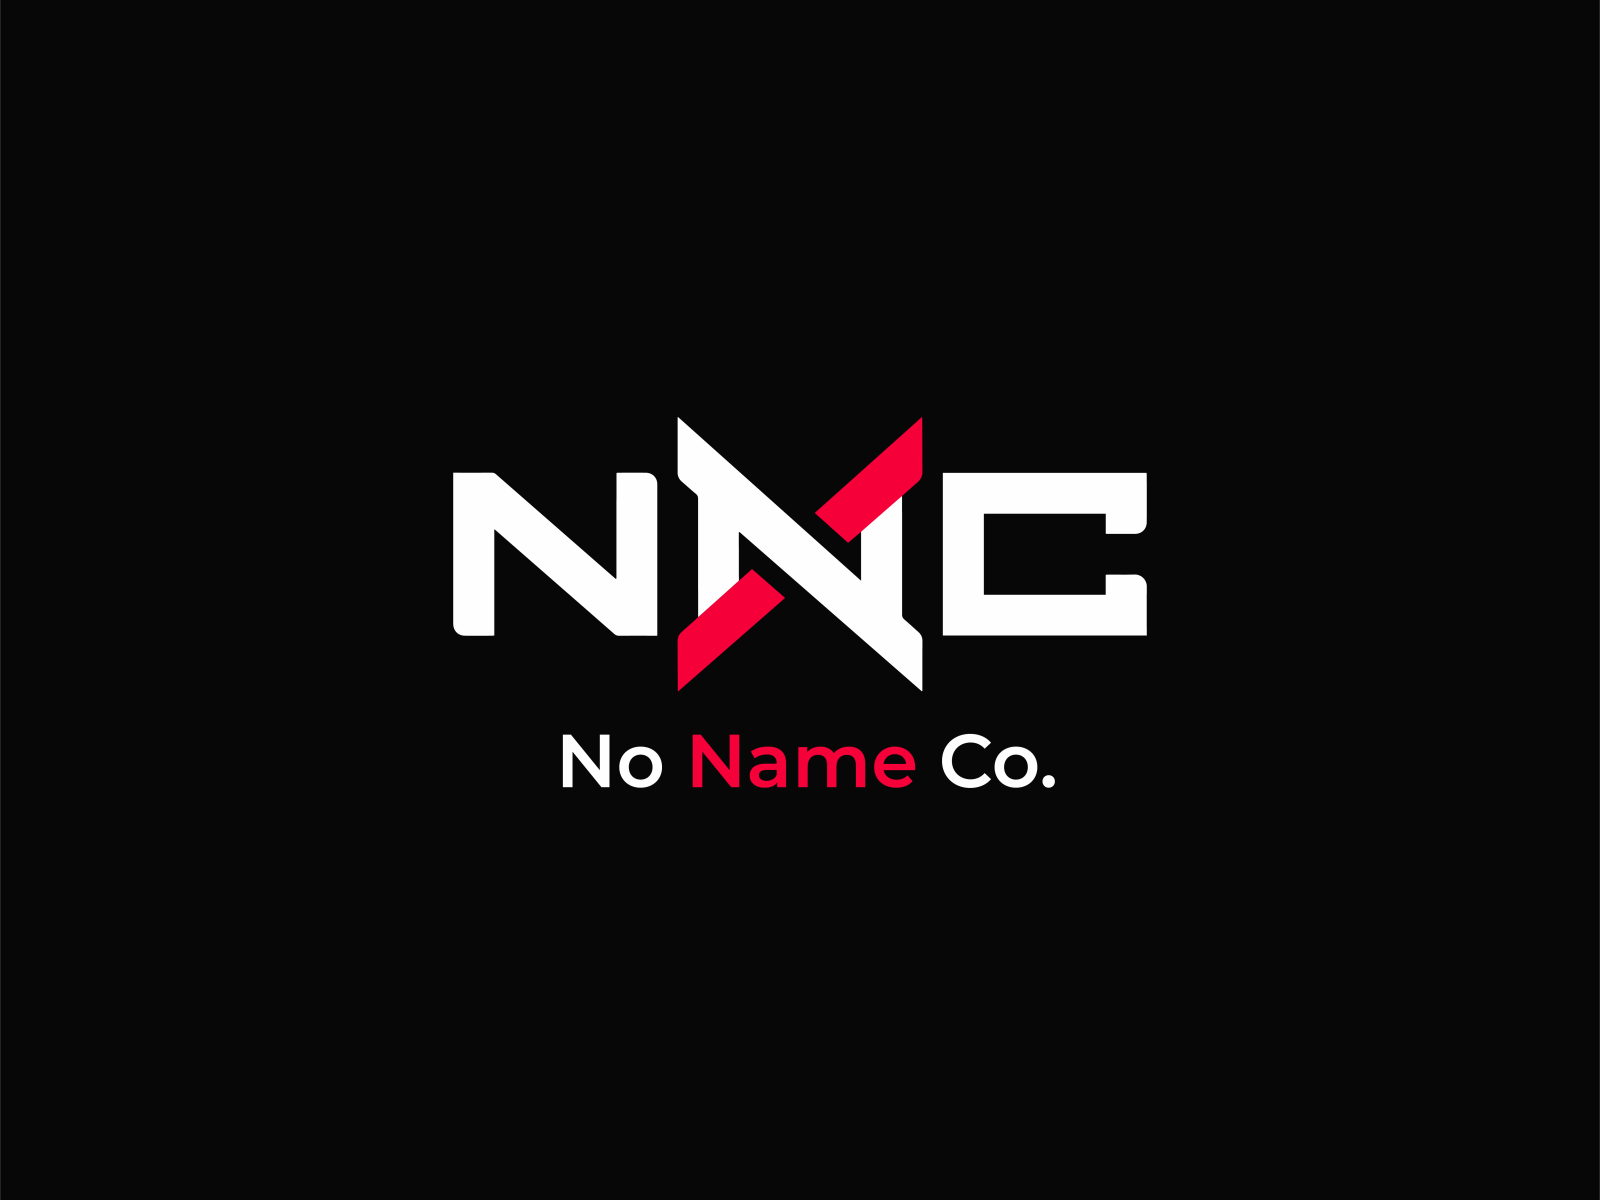 Logopond - Logo, Brand & Identity Inspiration (noname)